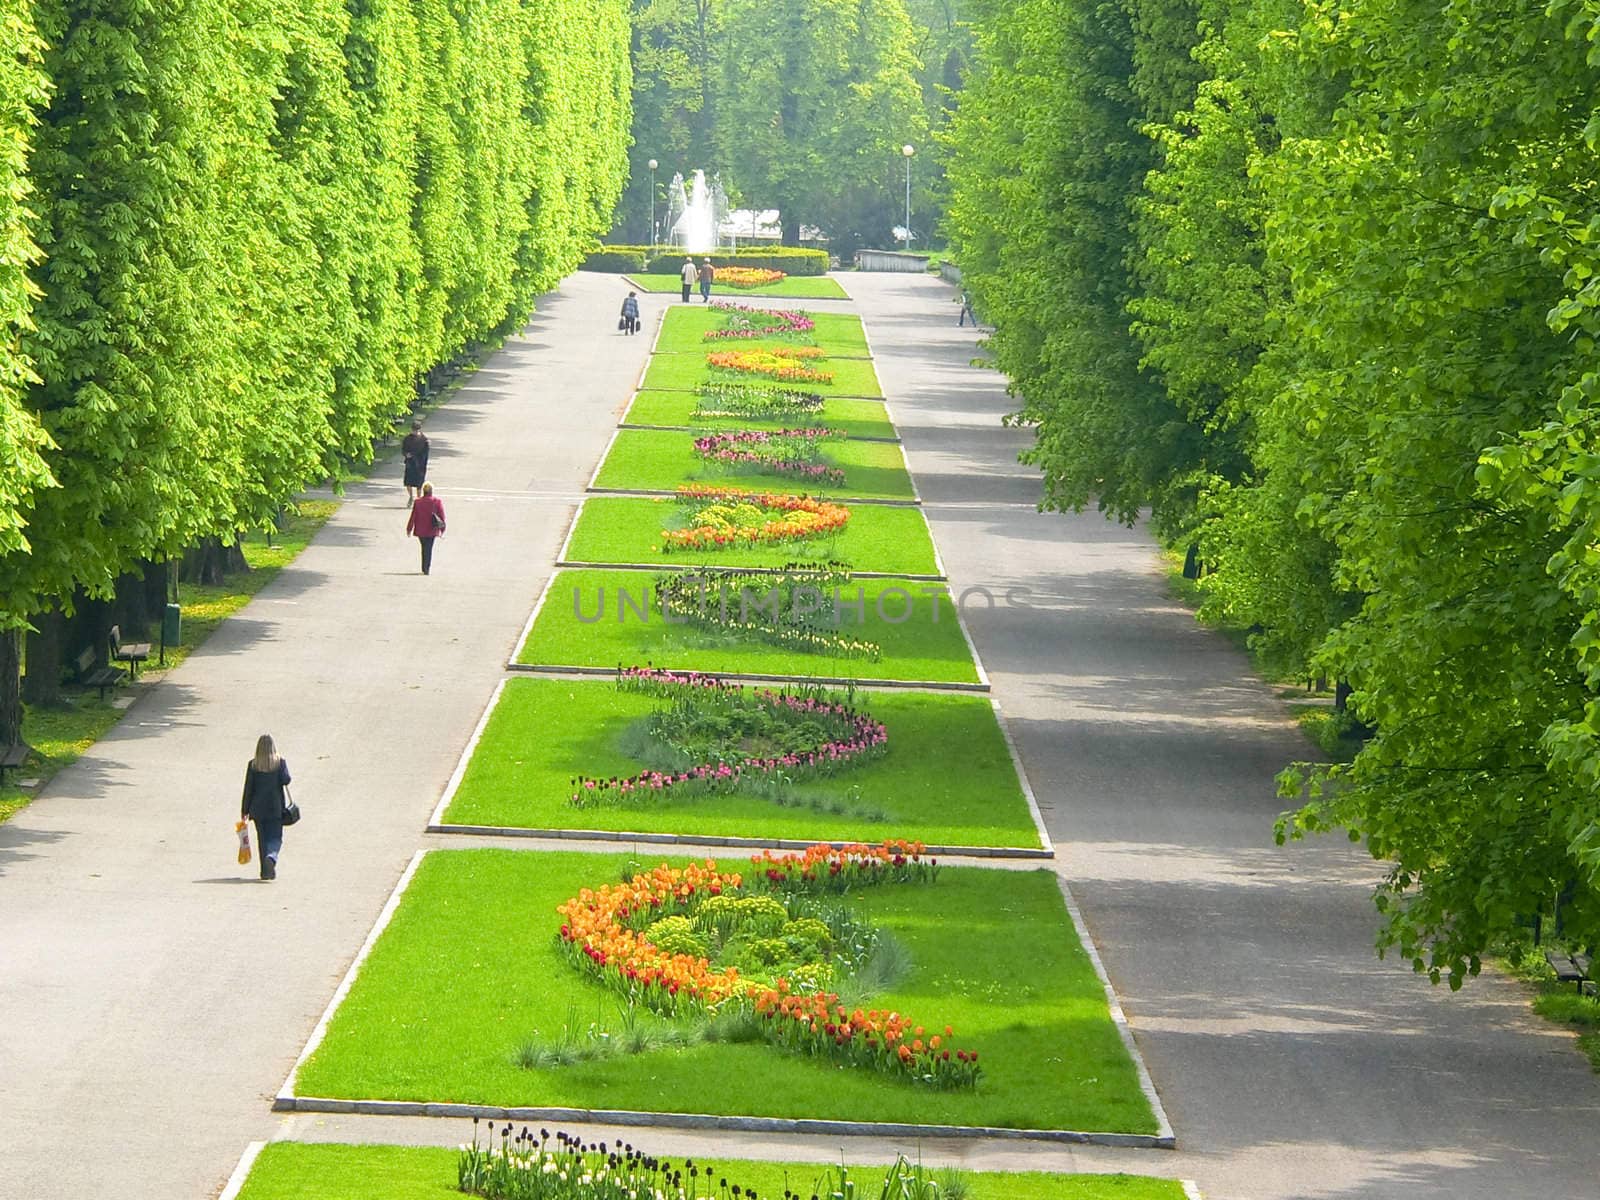 Central park "Flora" in Olomouc city - Czech republic by mozzyb